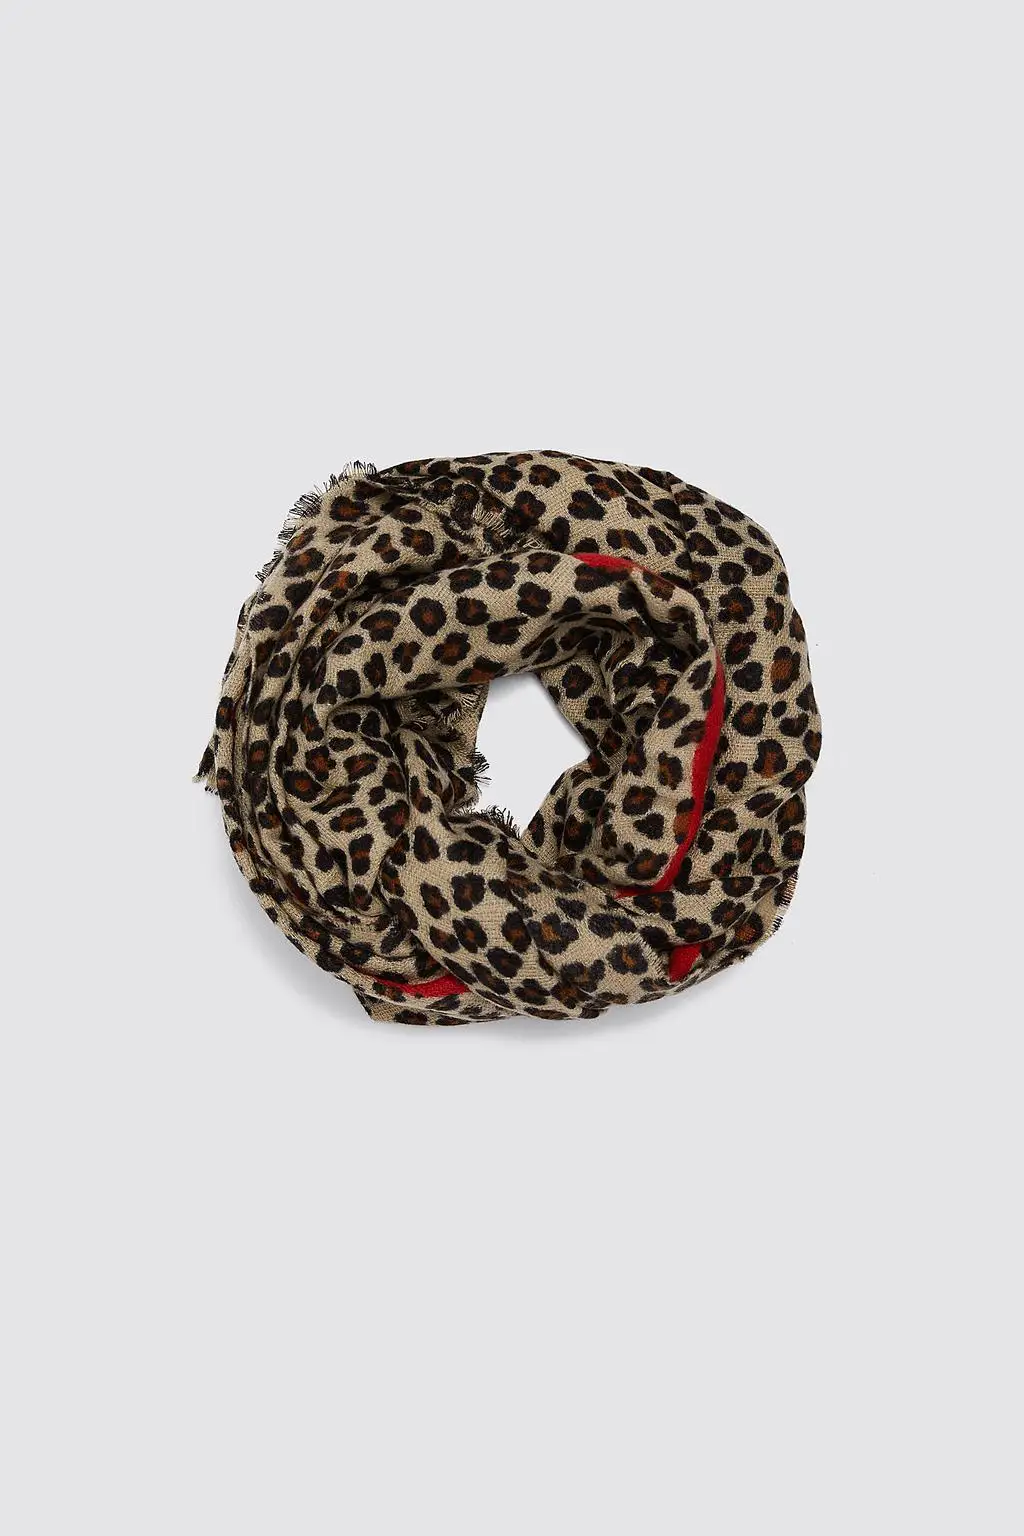 Леопардовый Кашемировый шарф для женщин Зимний теплый дизайн дамская модная пашминовая шаль платки для девочек красные шарфы Роскошный бренд